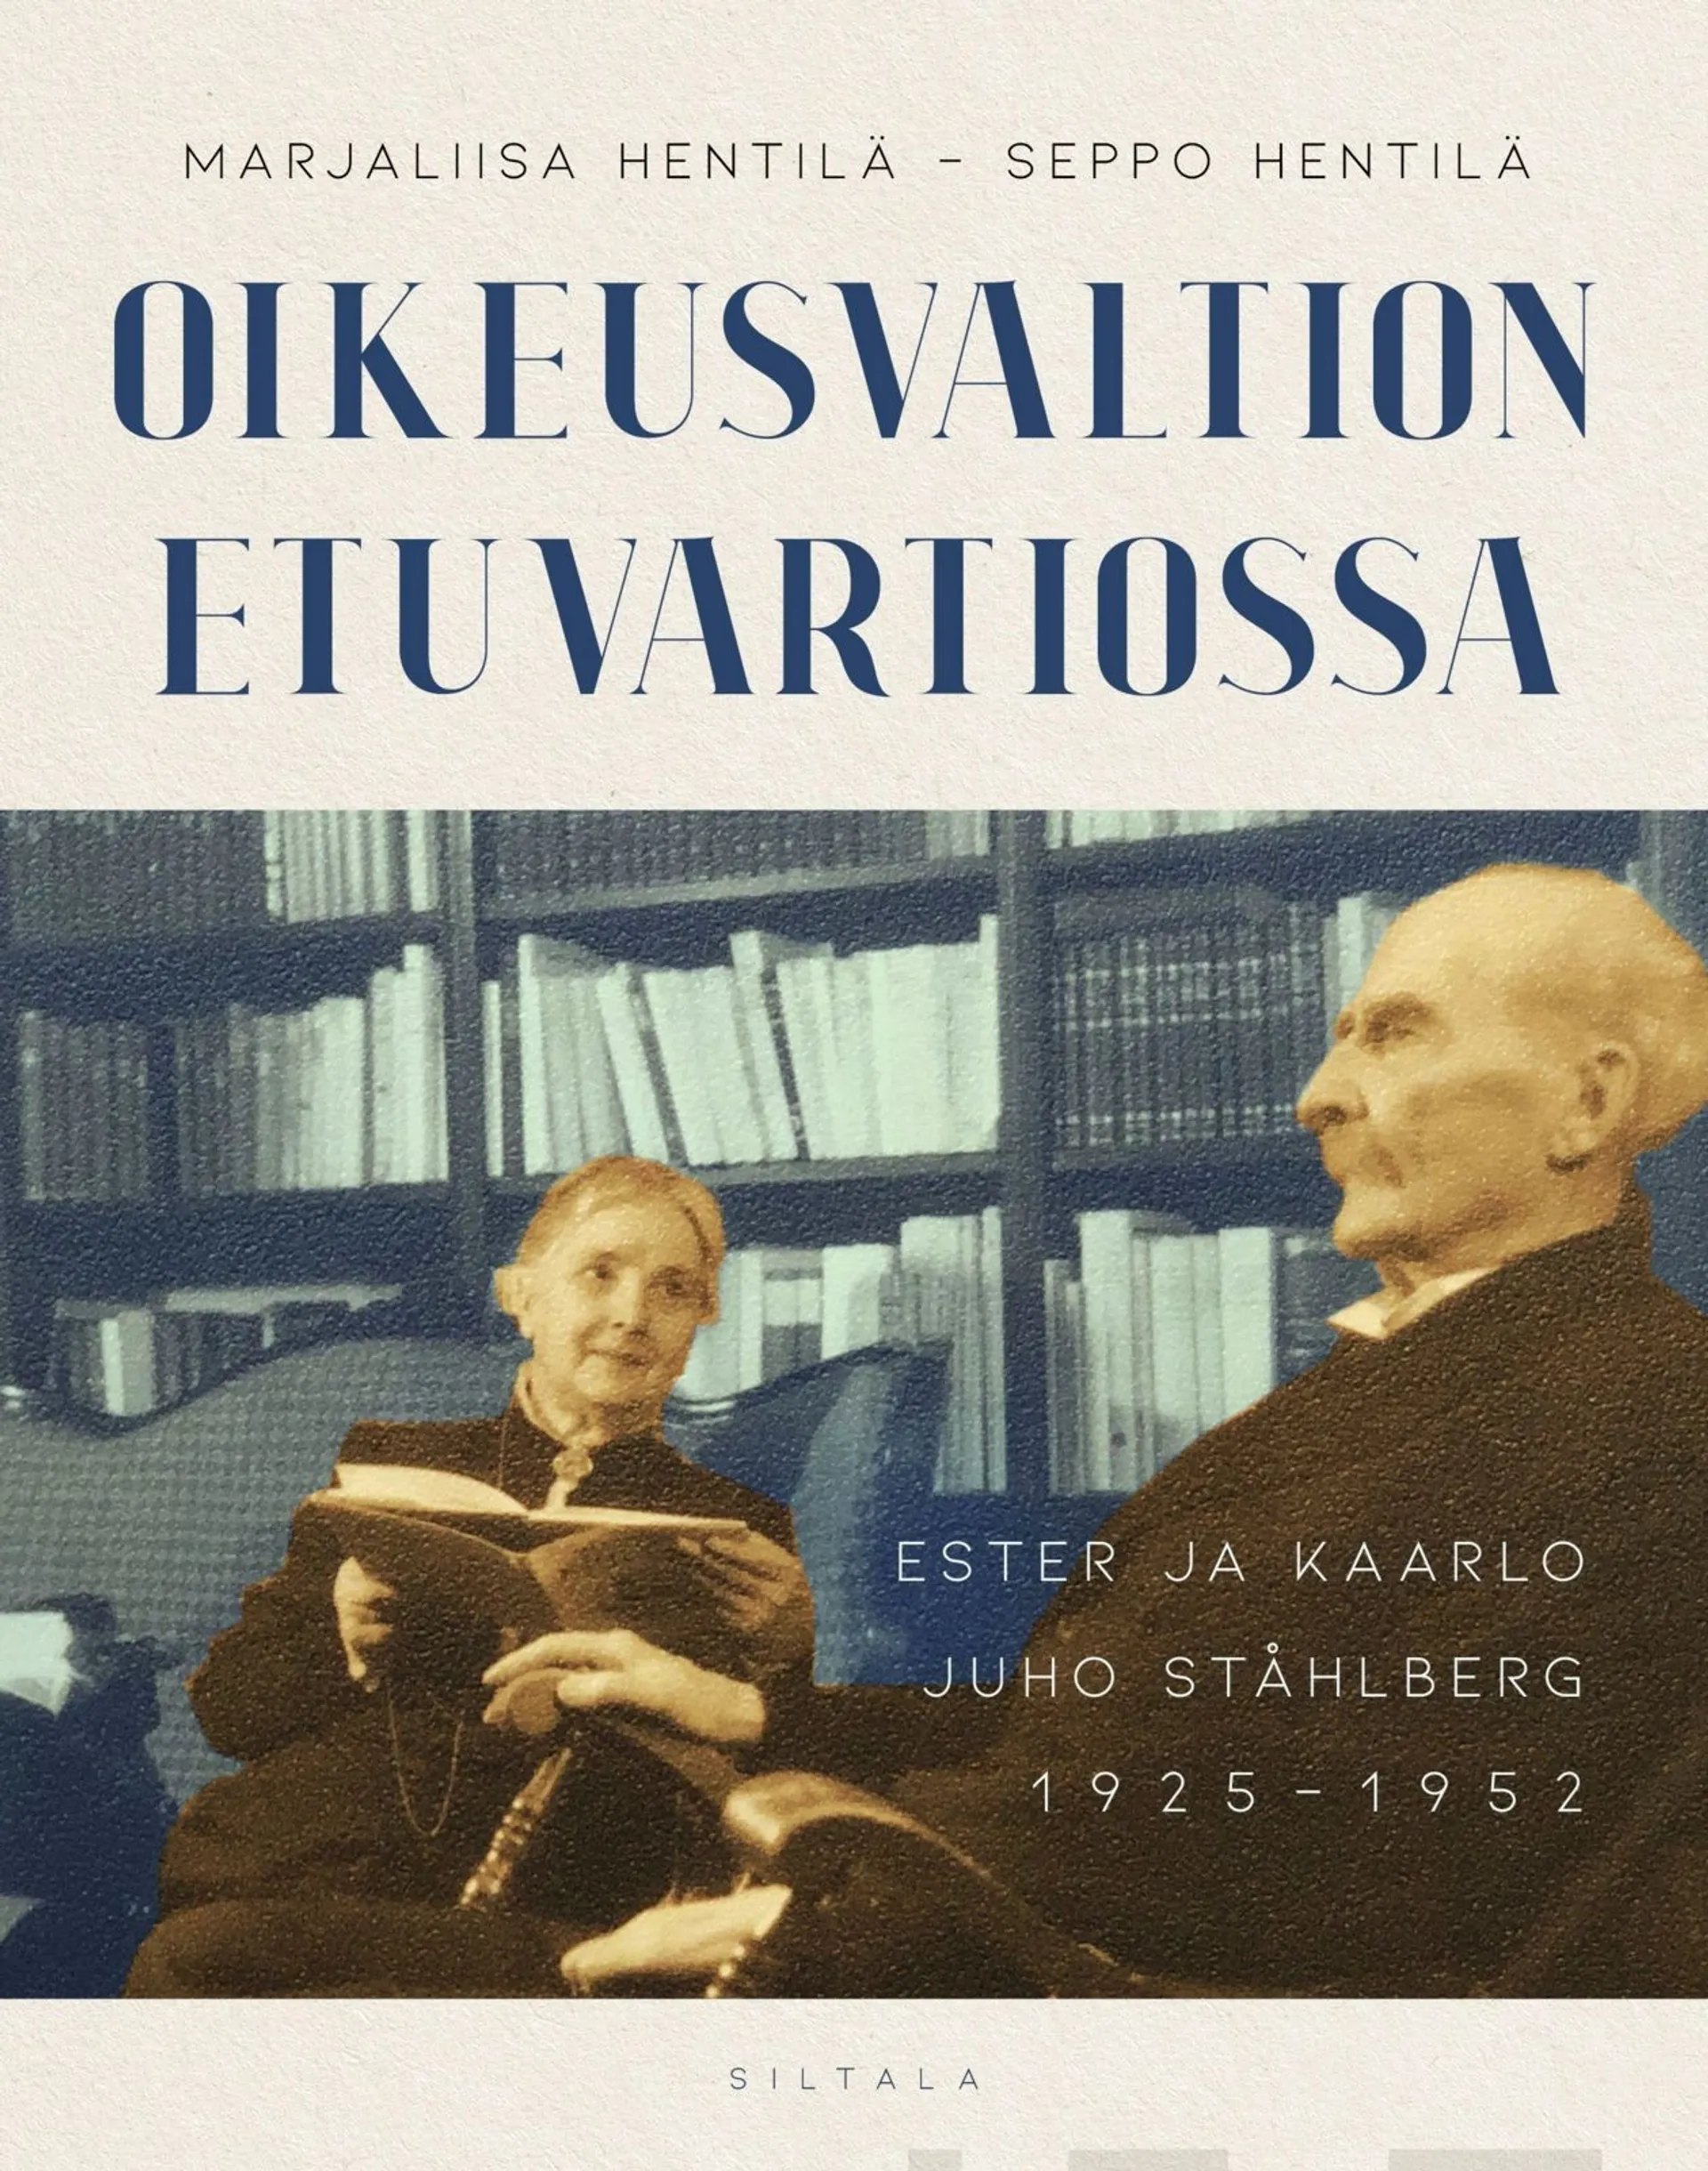 Hentilä, Oikeusvaltion vartiossa - Ester ja Kaarlo Juho Ståhlberg 1925 -1952